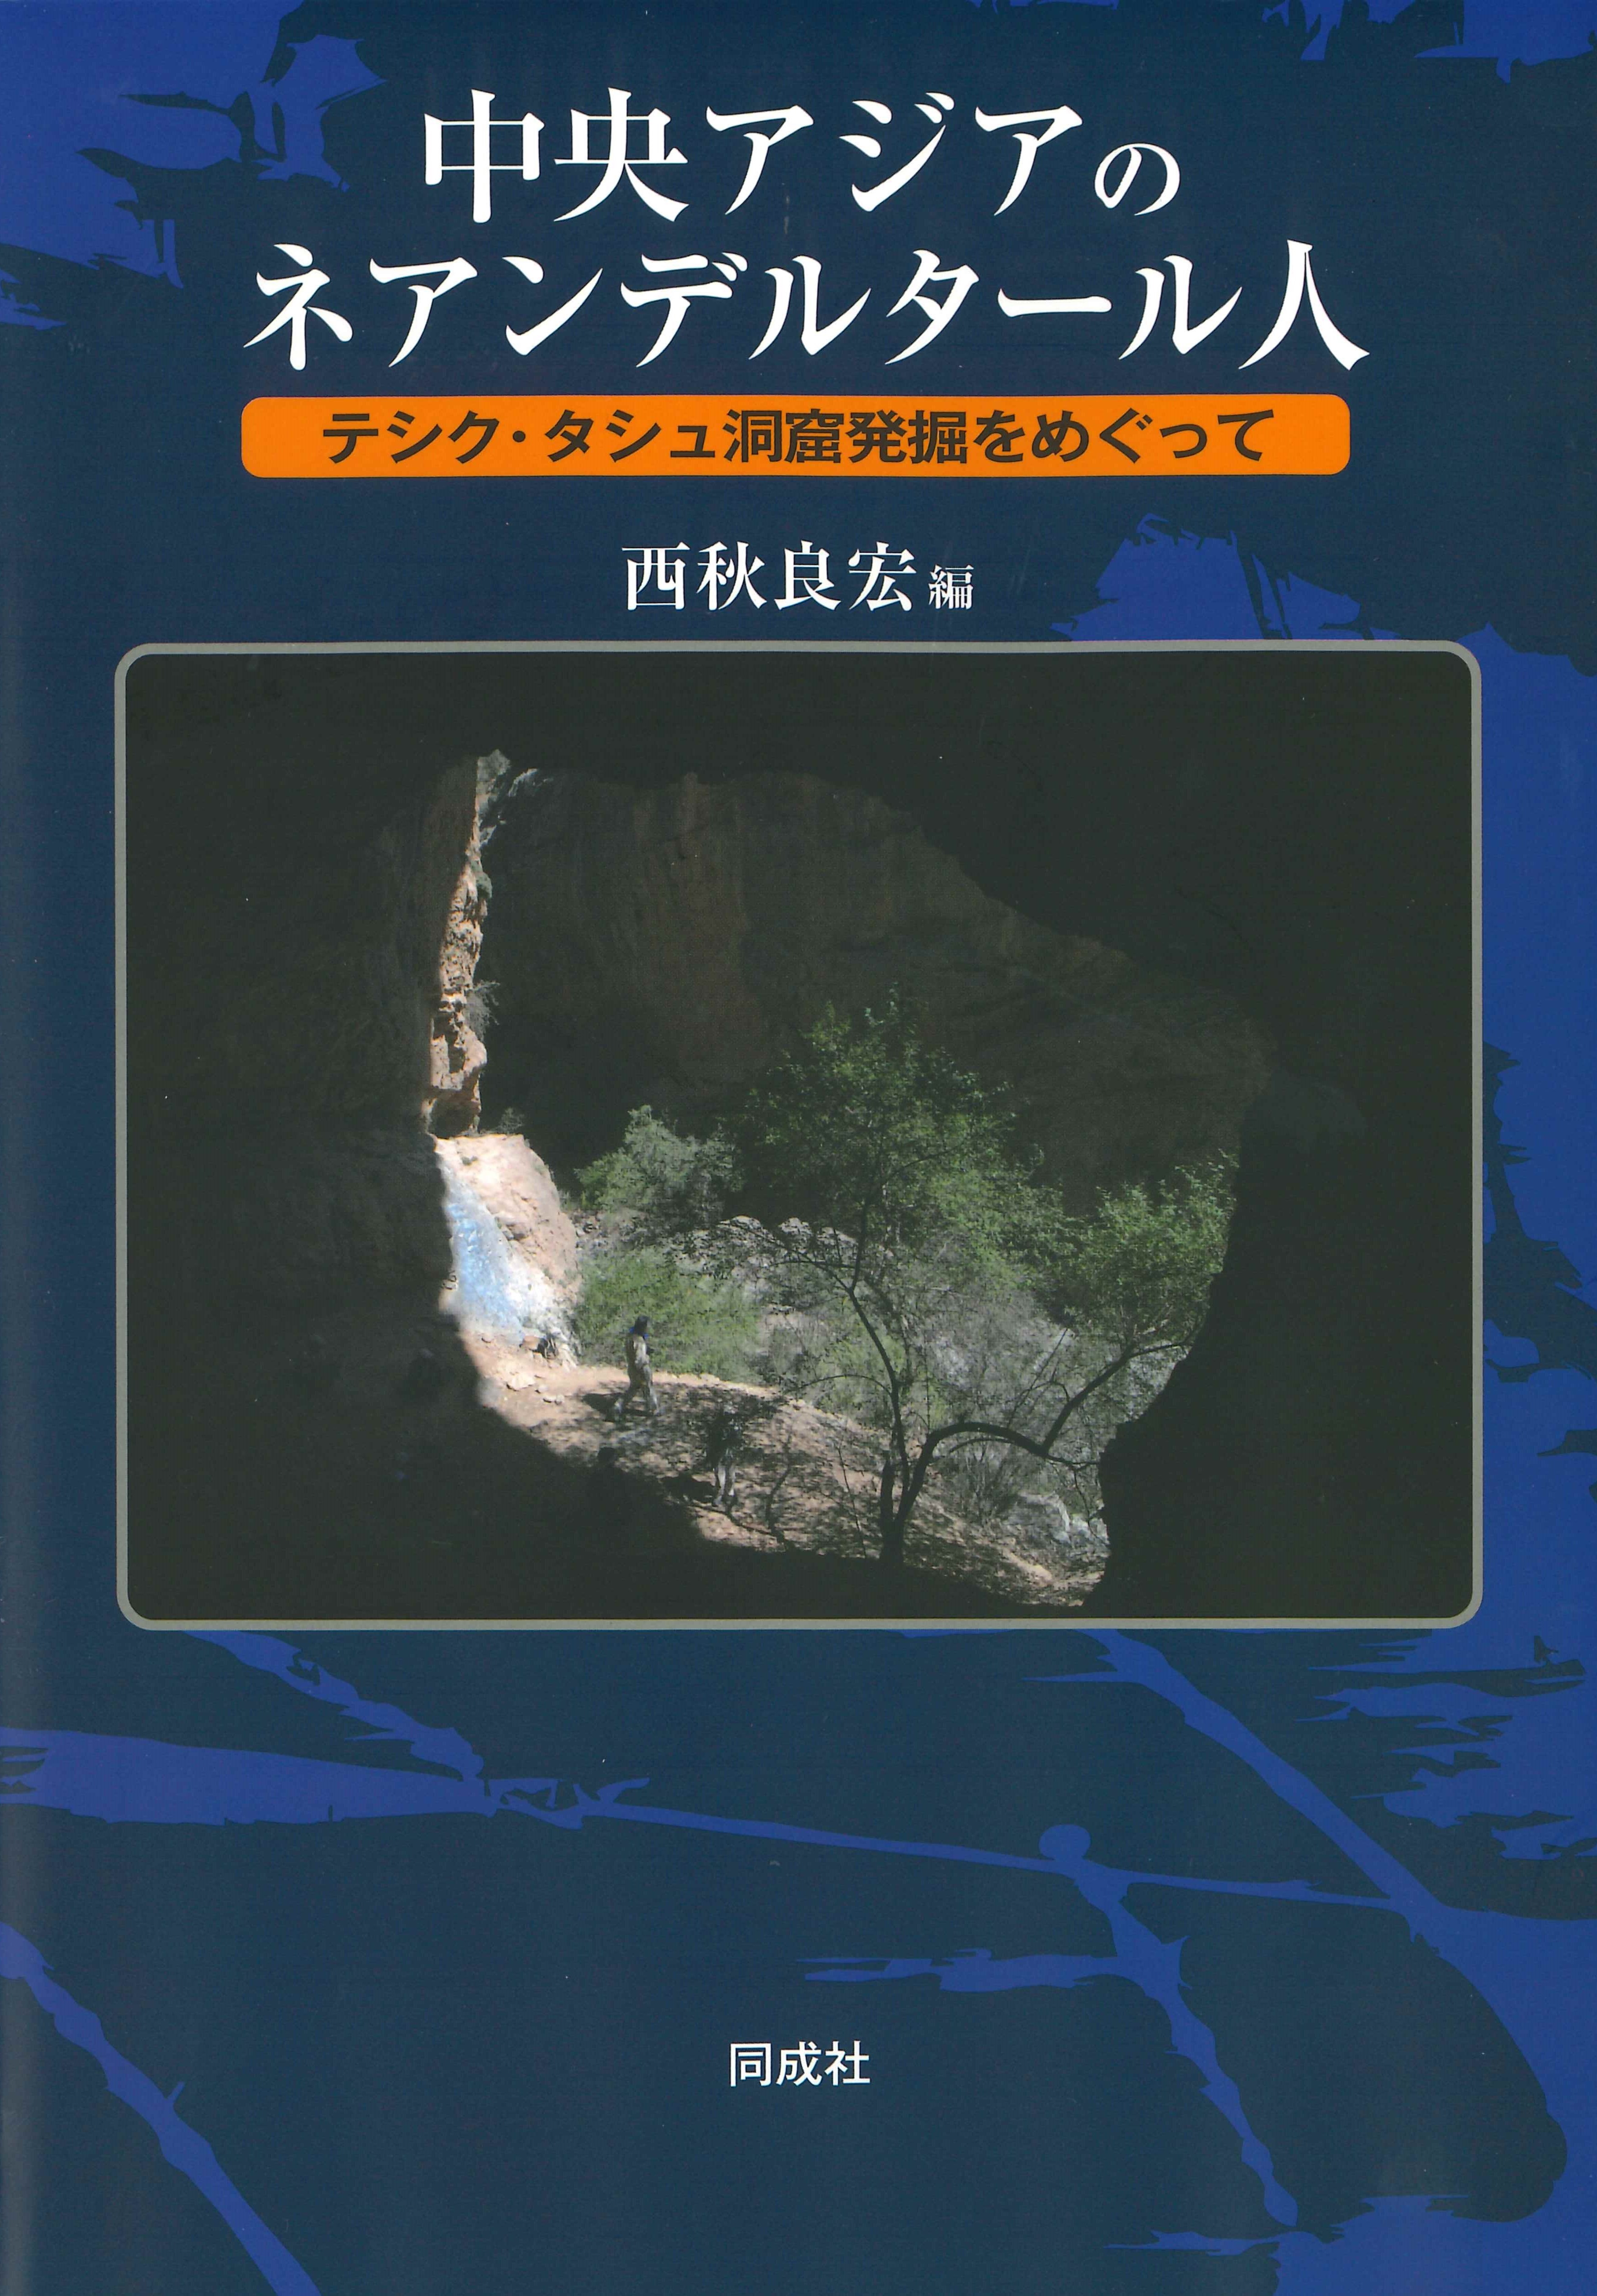 青い表紙に洞窟からの写真